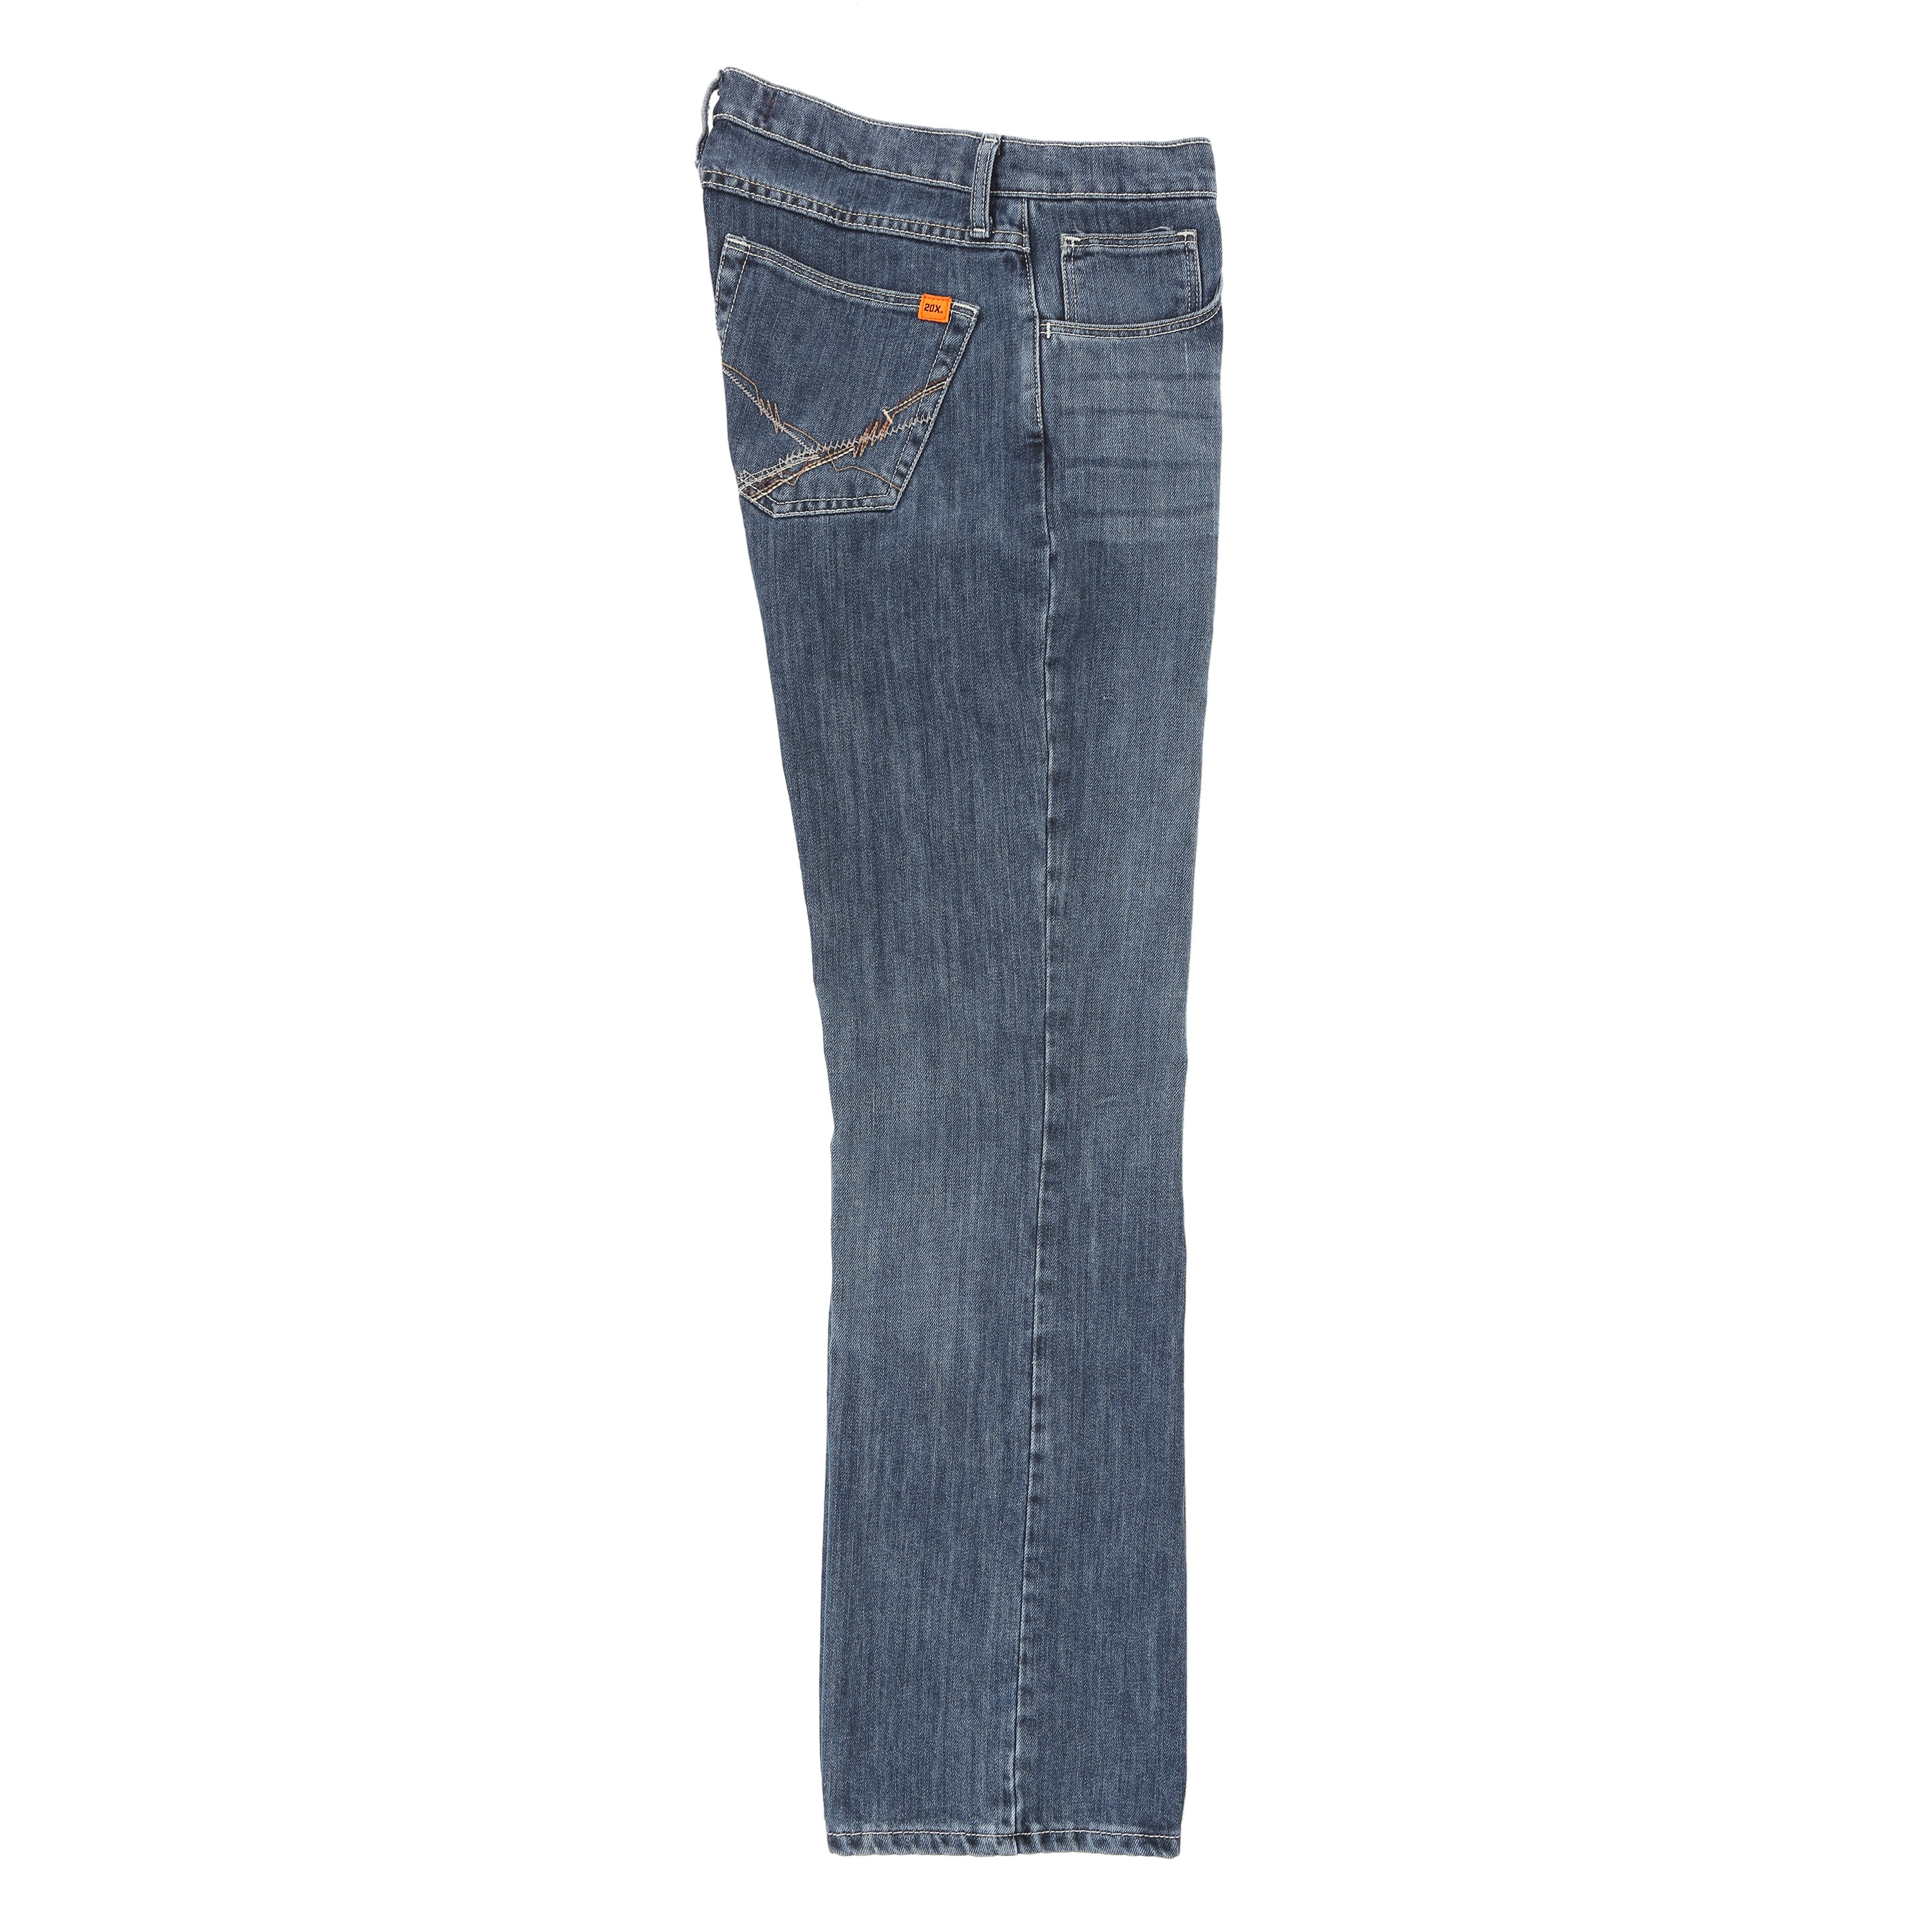 Wrangler FR Vintage Boot Cut Jean in Midstone